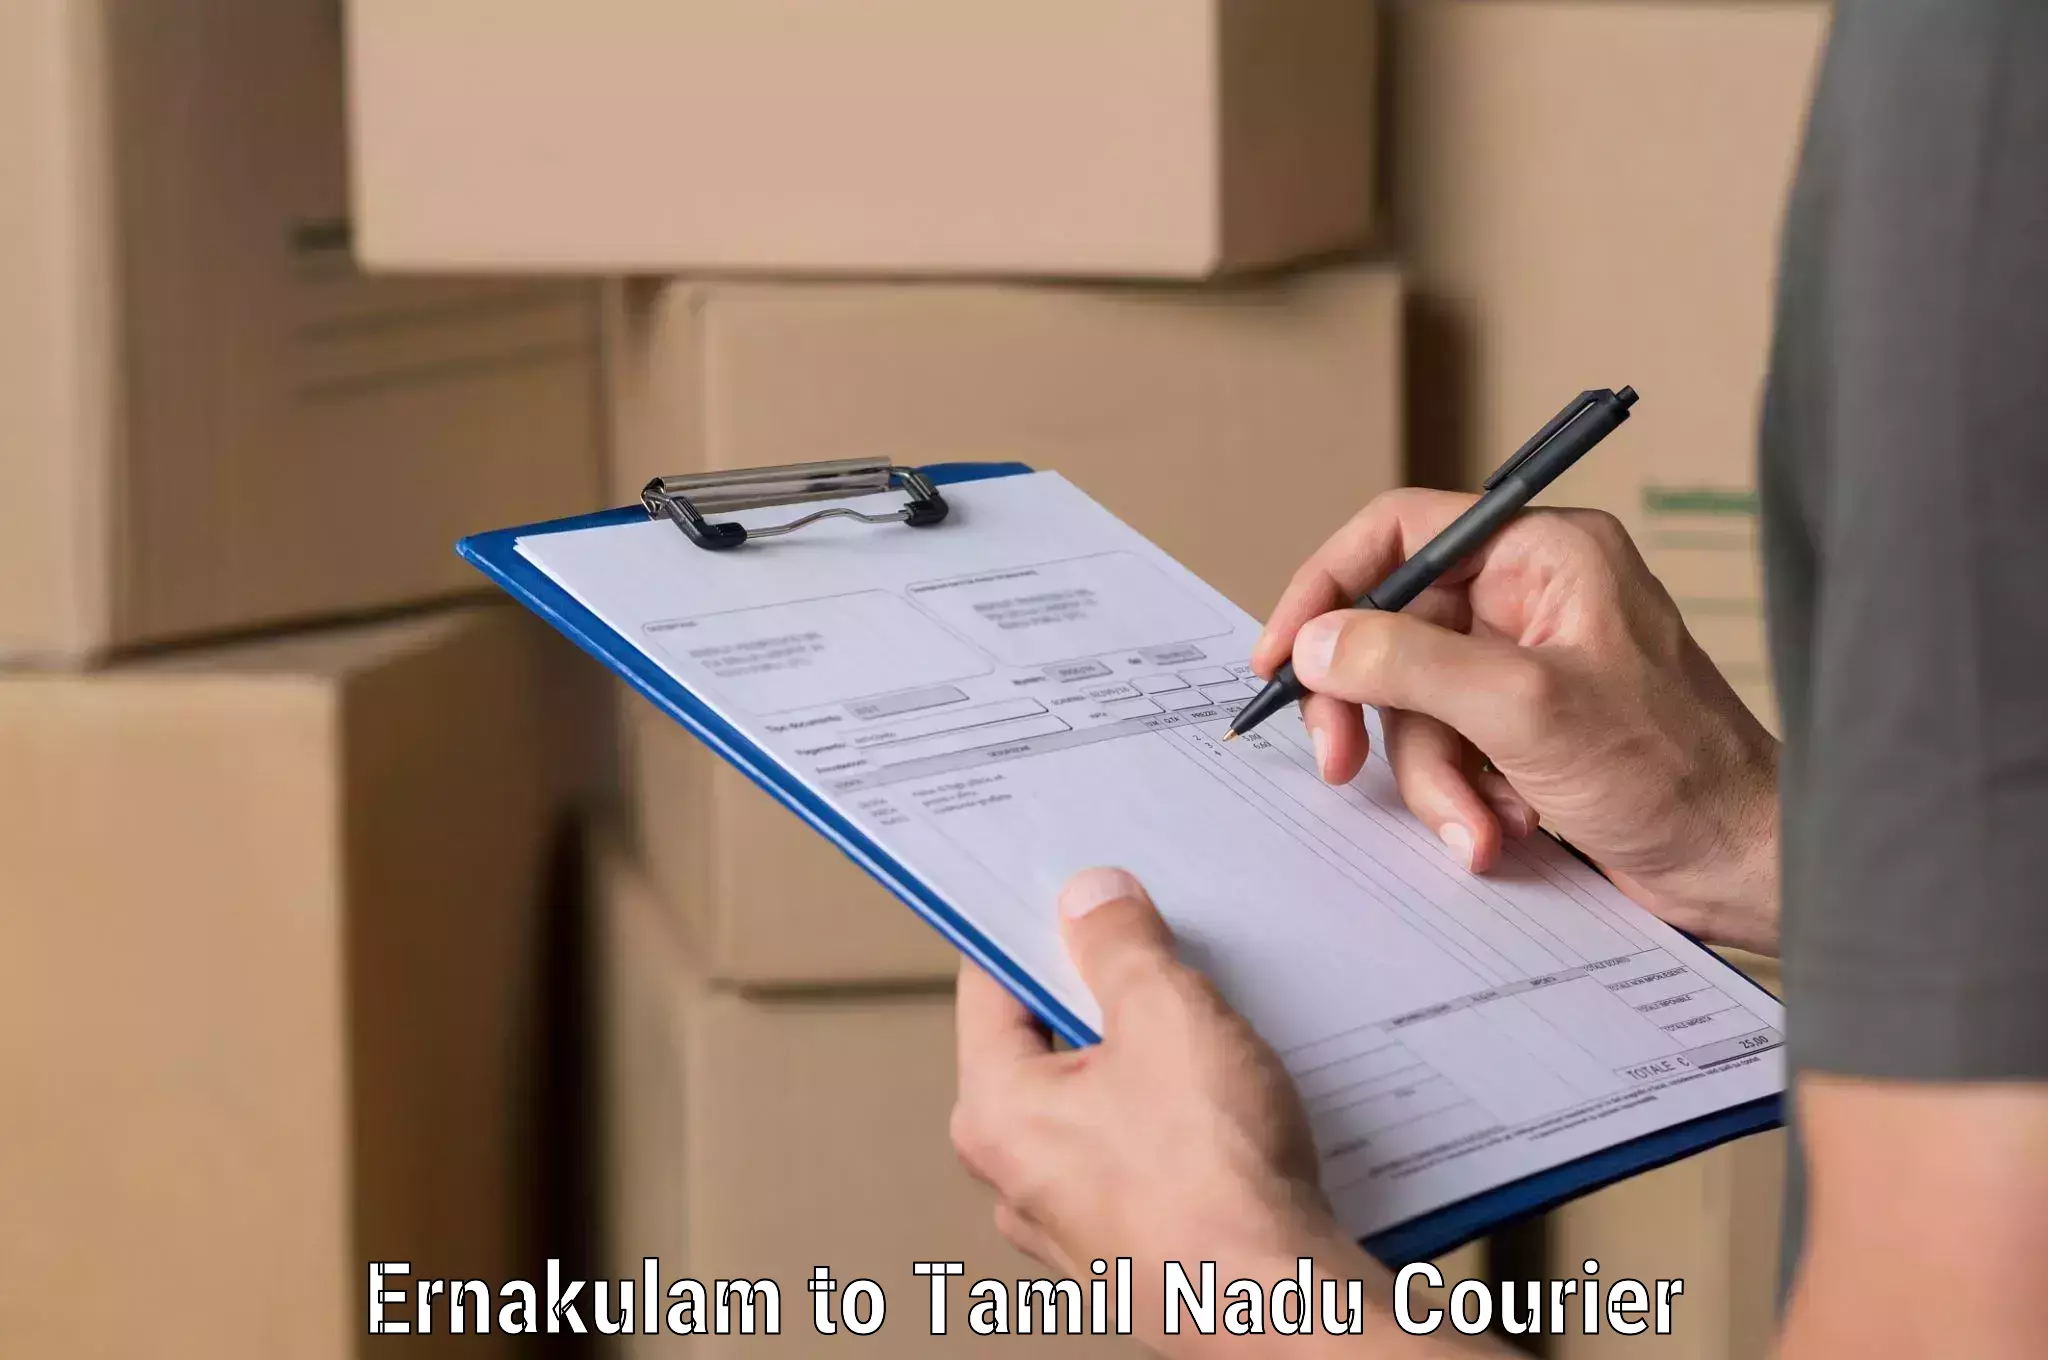 Global logistics network Ernakulam to Tamil Nadu